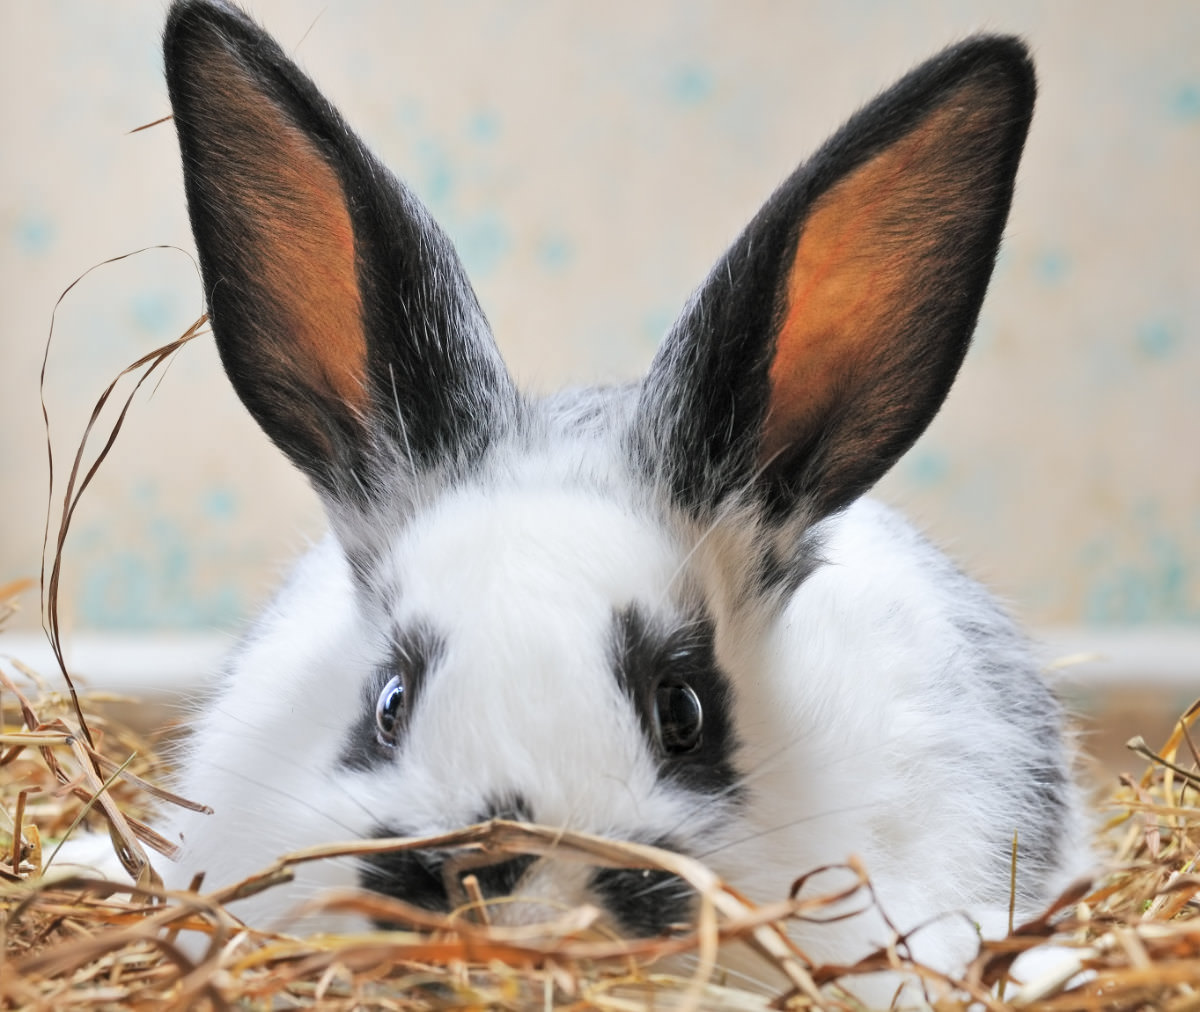 Rimedi casalinghi per curare l'inappetenza del coniglio